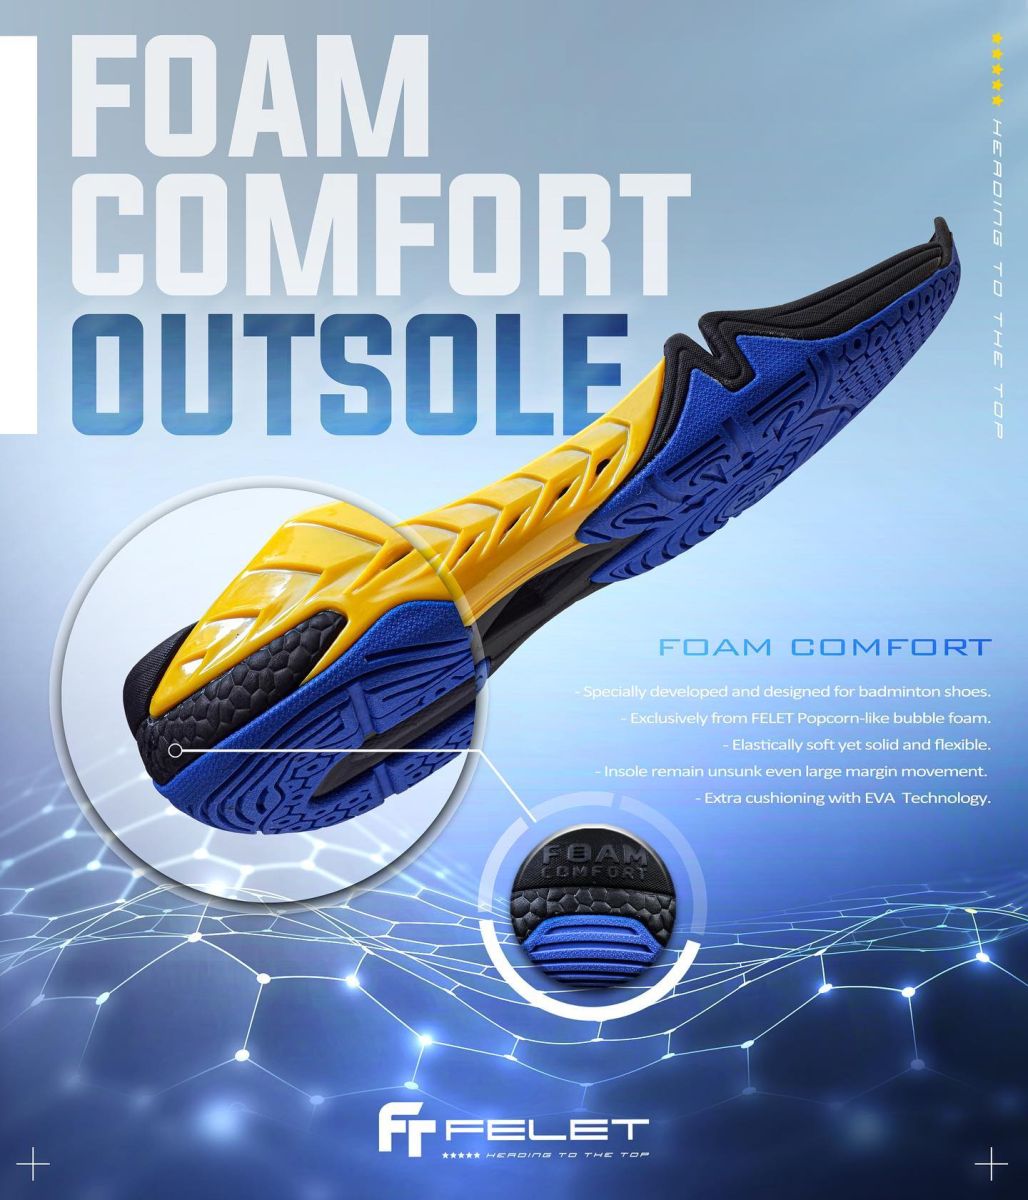 Giới thiệu công nghệ giày cầu lông Felet FOAM COMFORT